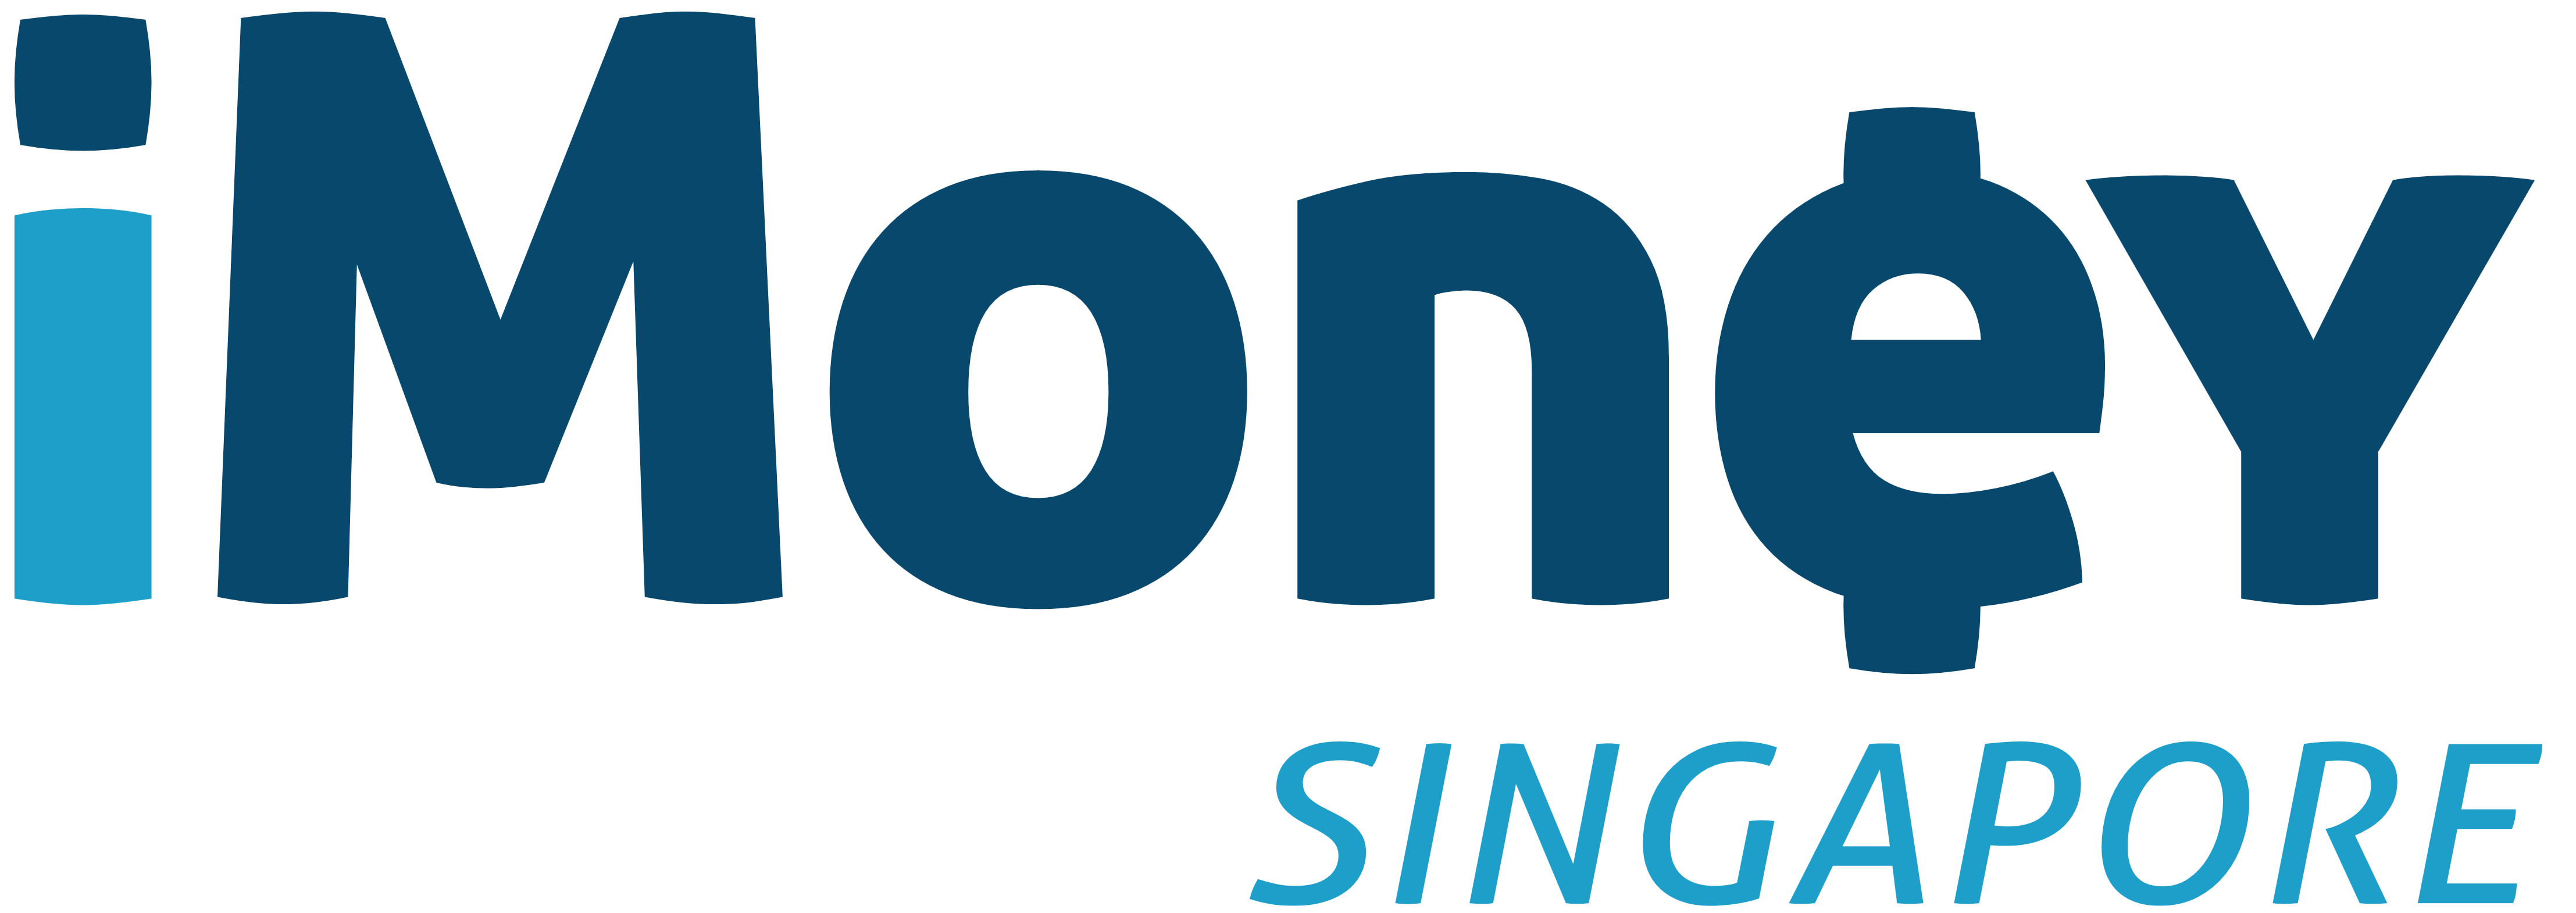 iMoney Singapore logo, logotype